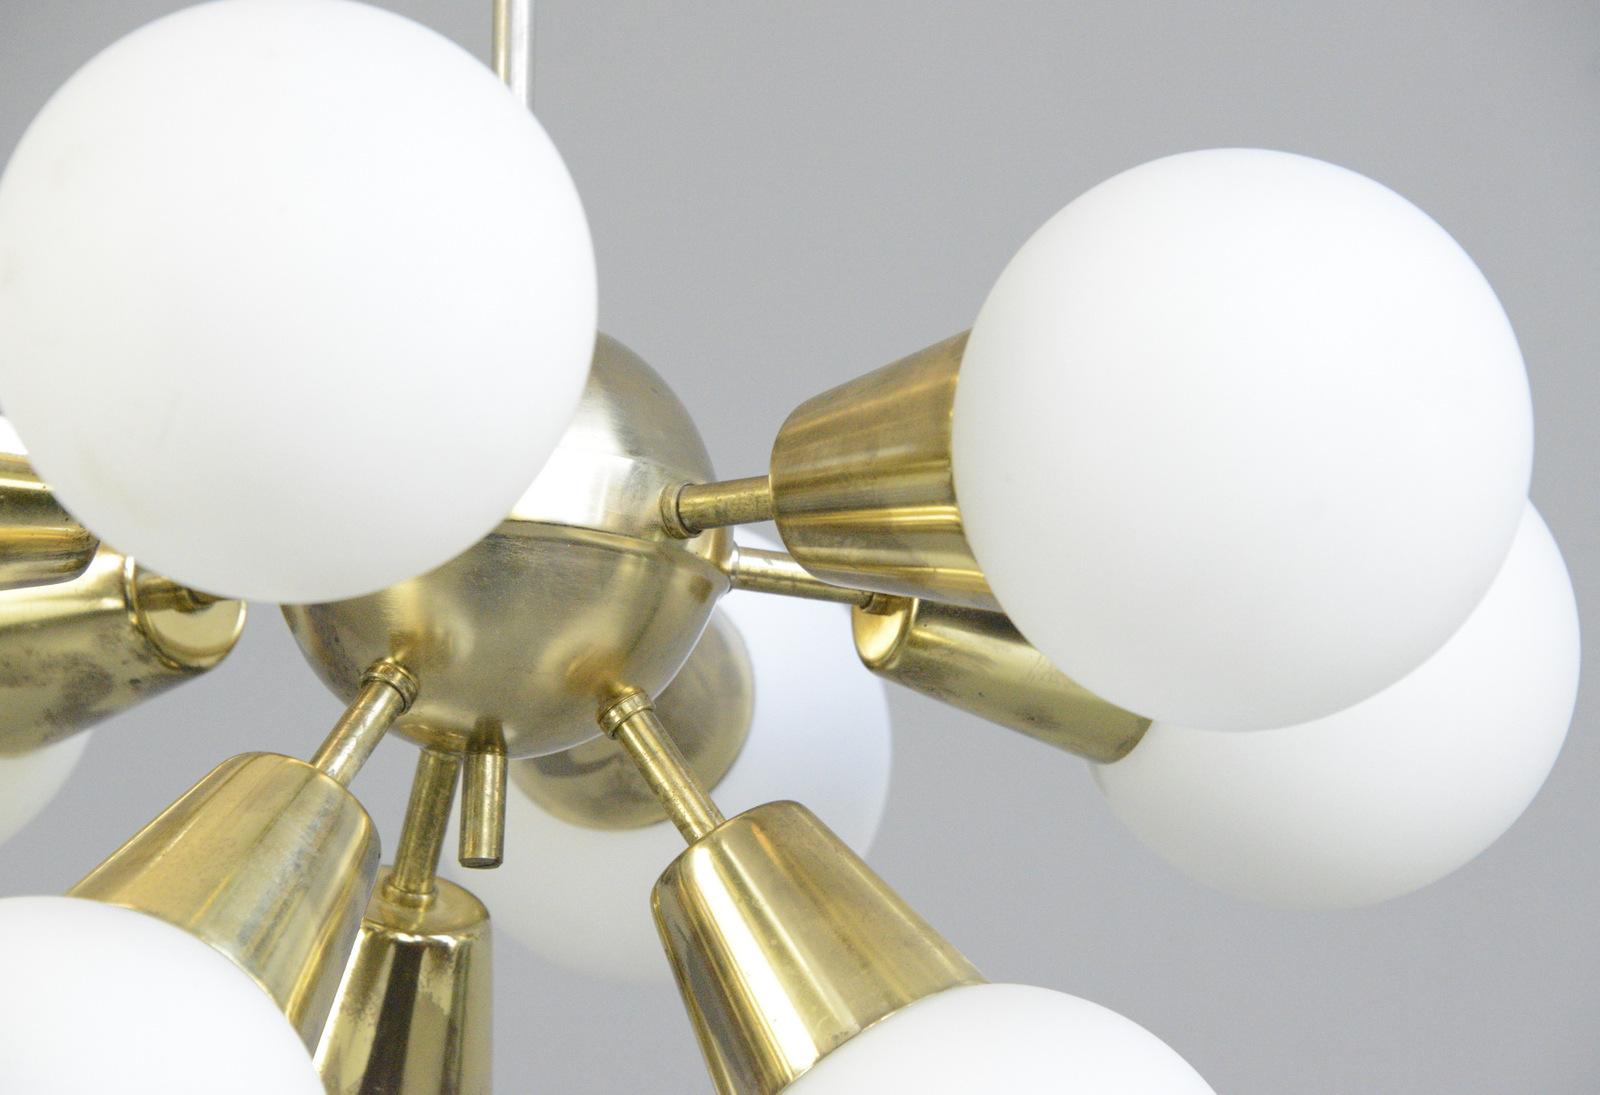 Lampe pendante Sputnik de Kamenicky Senov

- Corps en laiton
- 9 boules de verre
- Accepte les ampoules à vis E14
- Livré avec des ampoules LED à faible consommation d'énergie
- Recâblage avec des composants électriques modernes
- Tchèque,